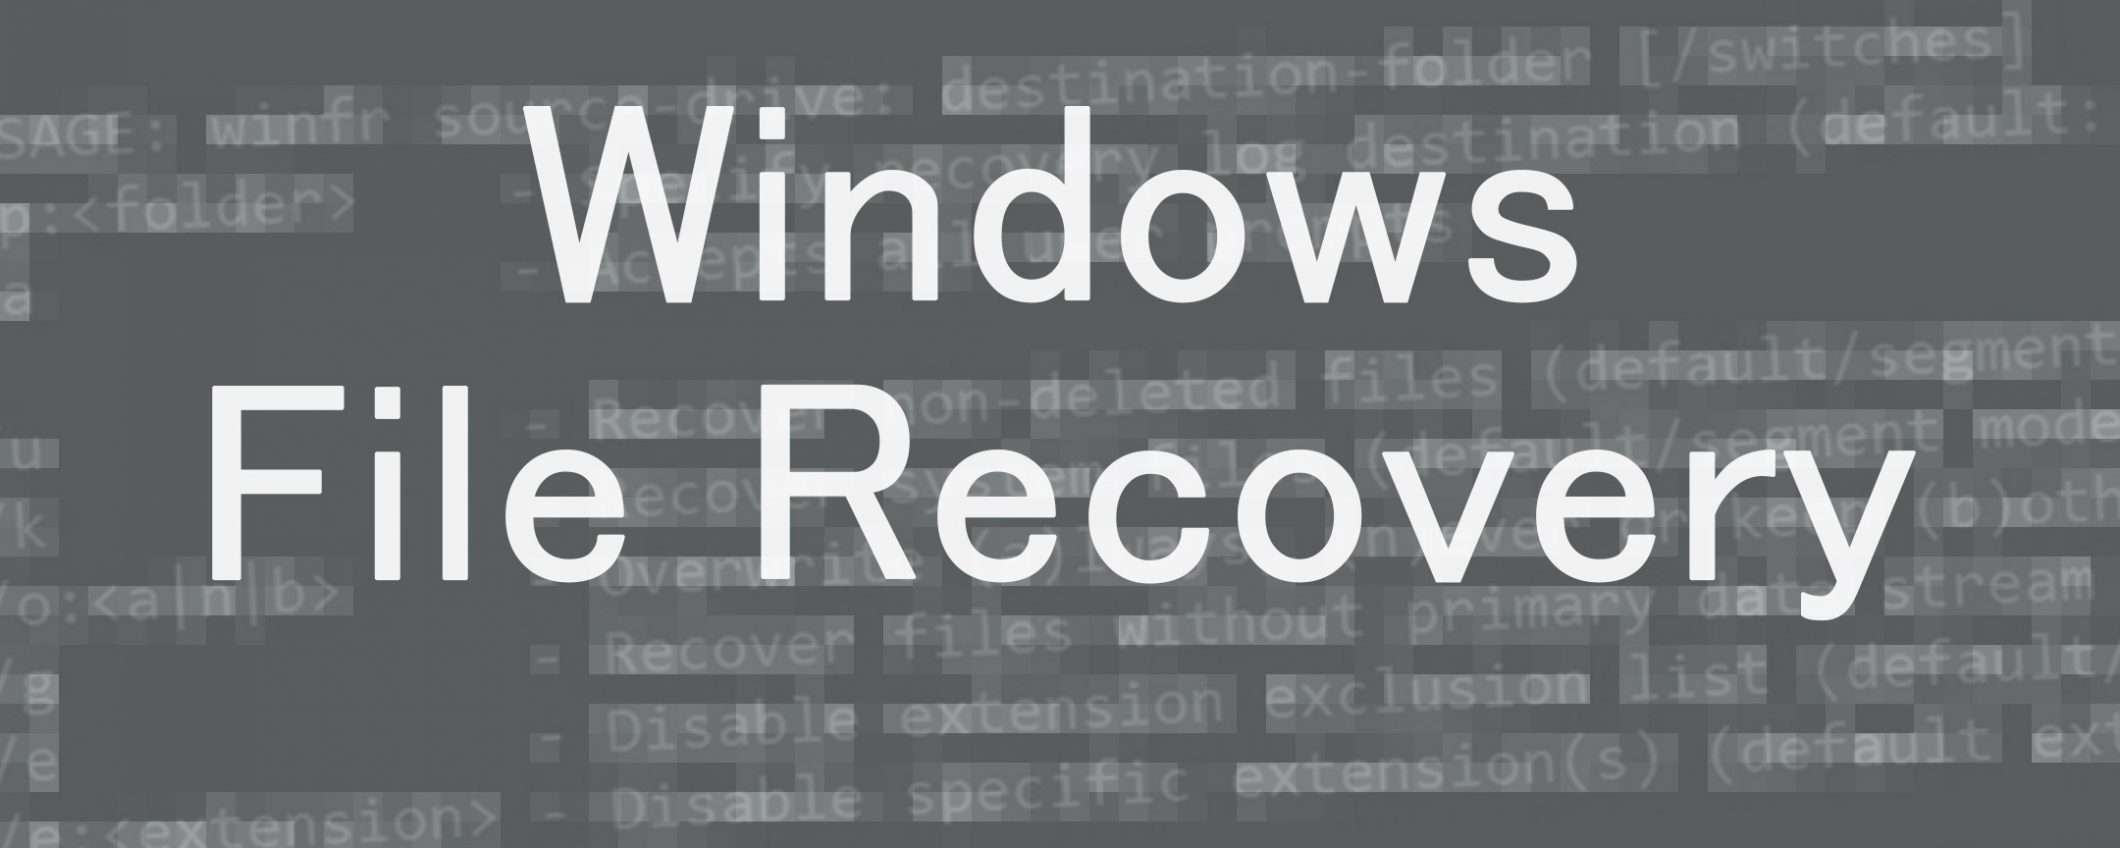 Windows File Recovery per il recupero file su PC